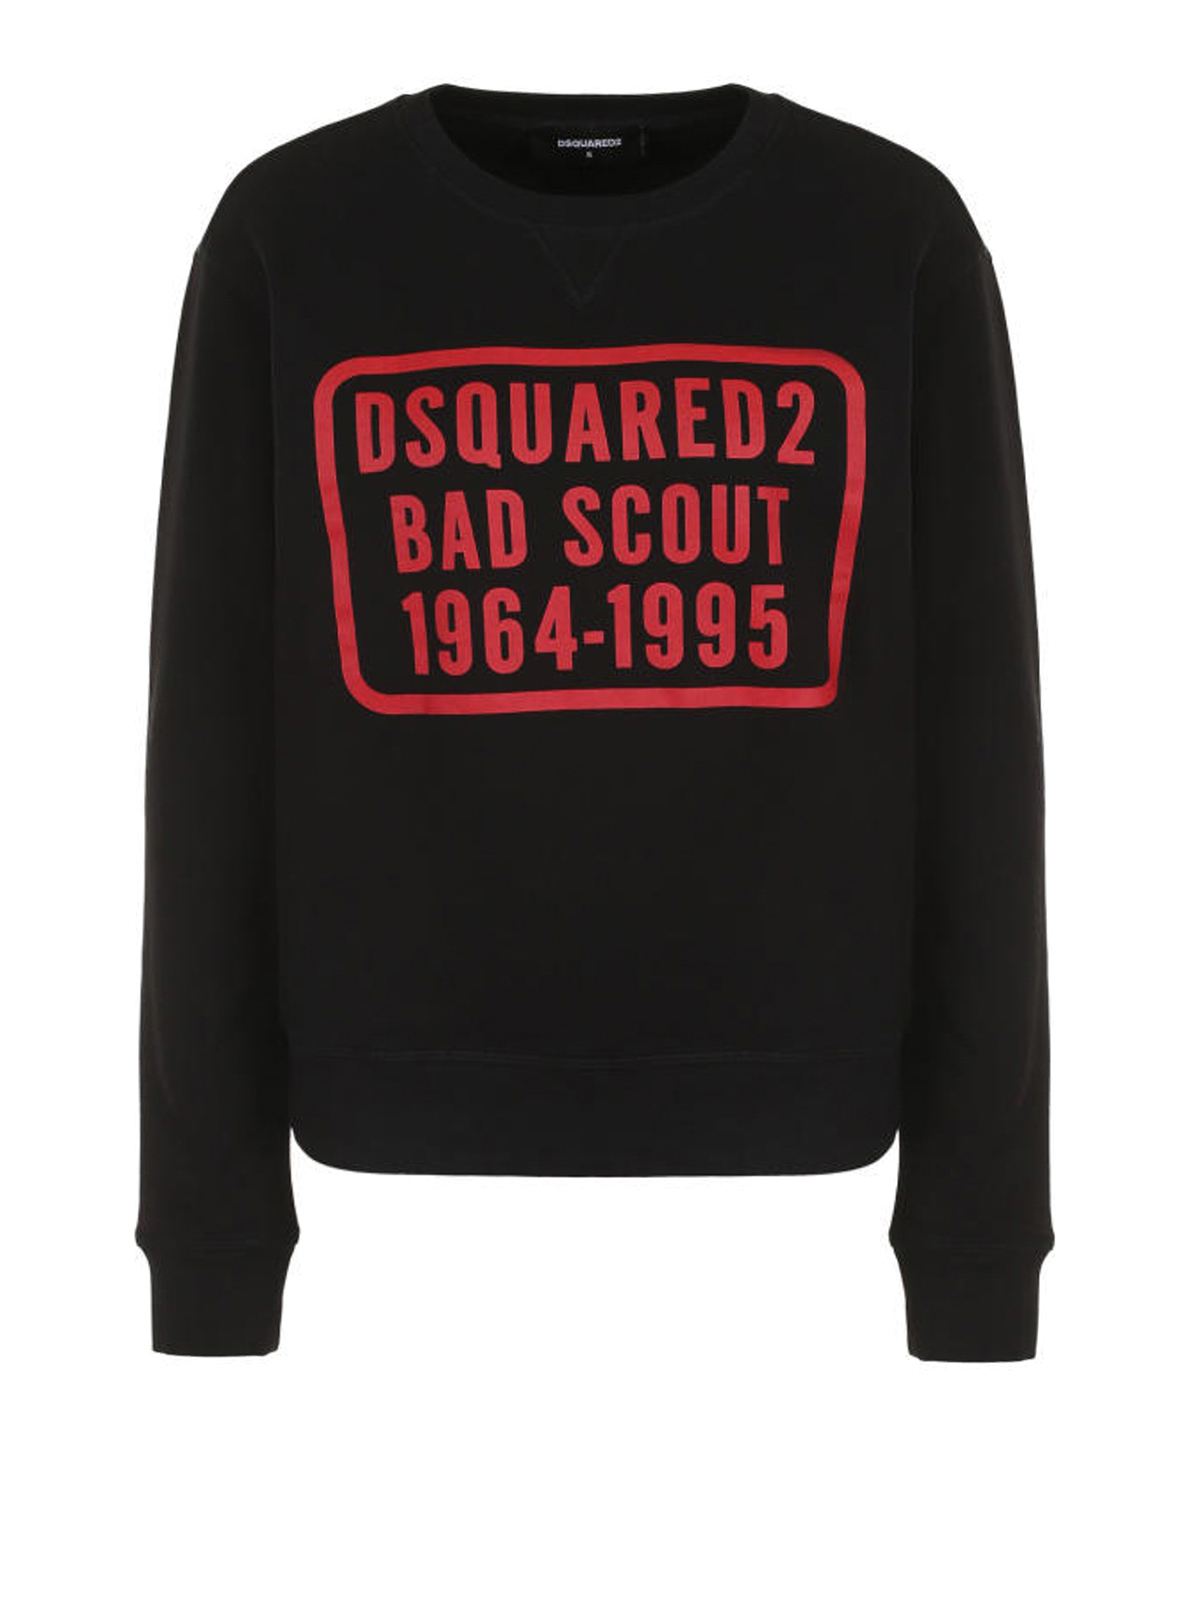 Dsquared2 - Bad Scout cotton sweatshirt 